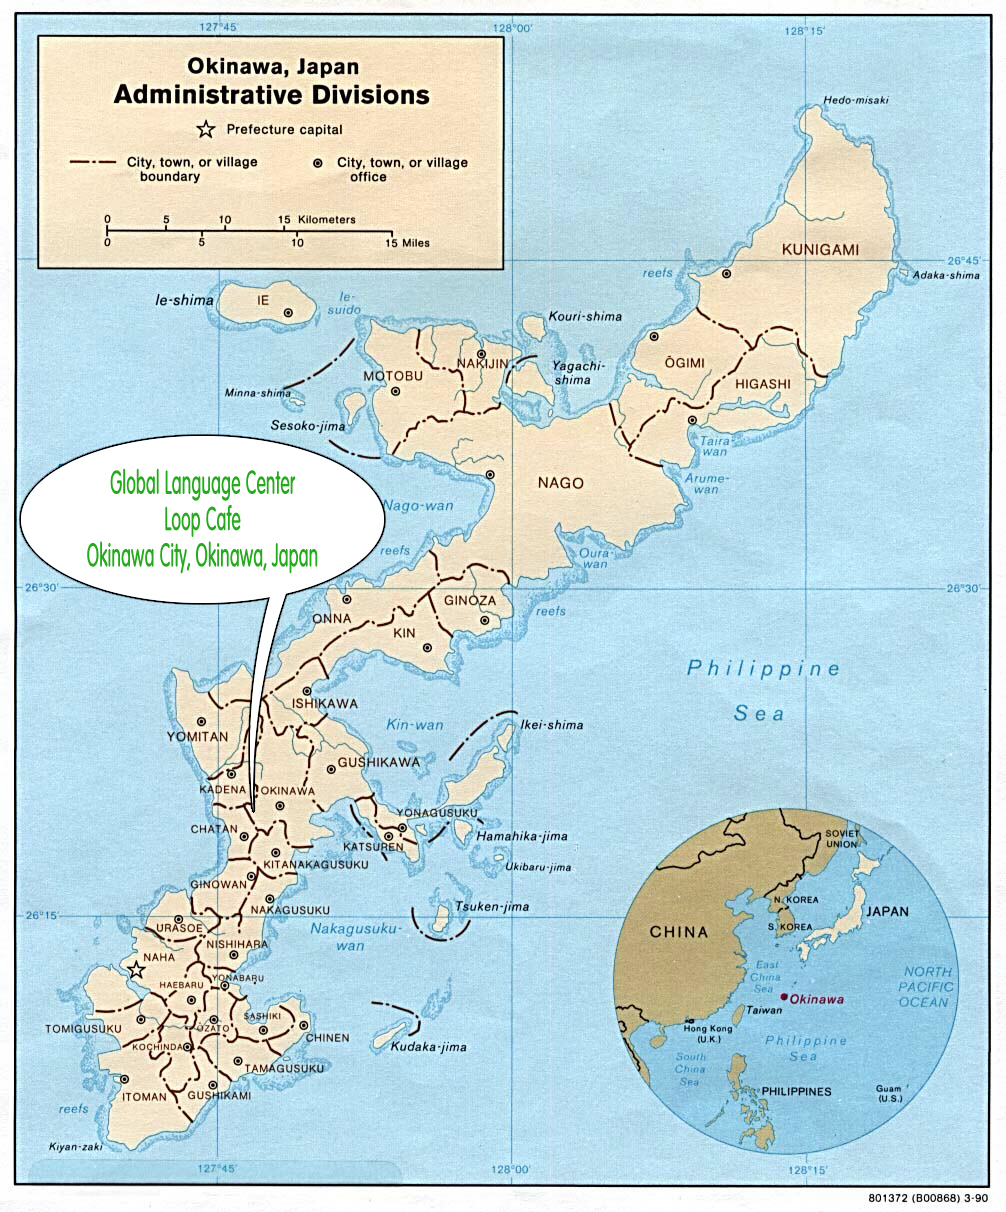 GLC location in Okinawa City, Okinawa, Japan